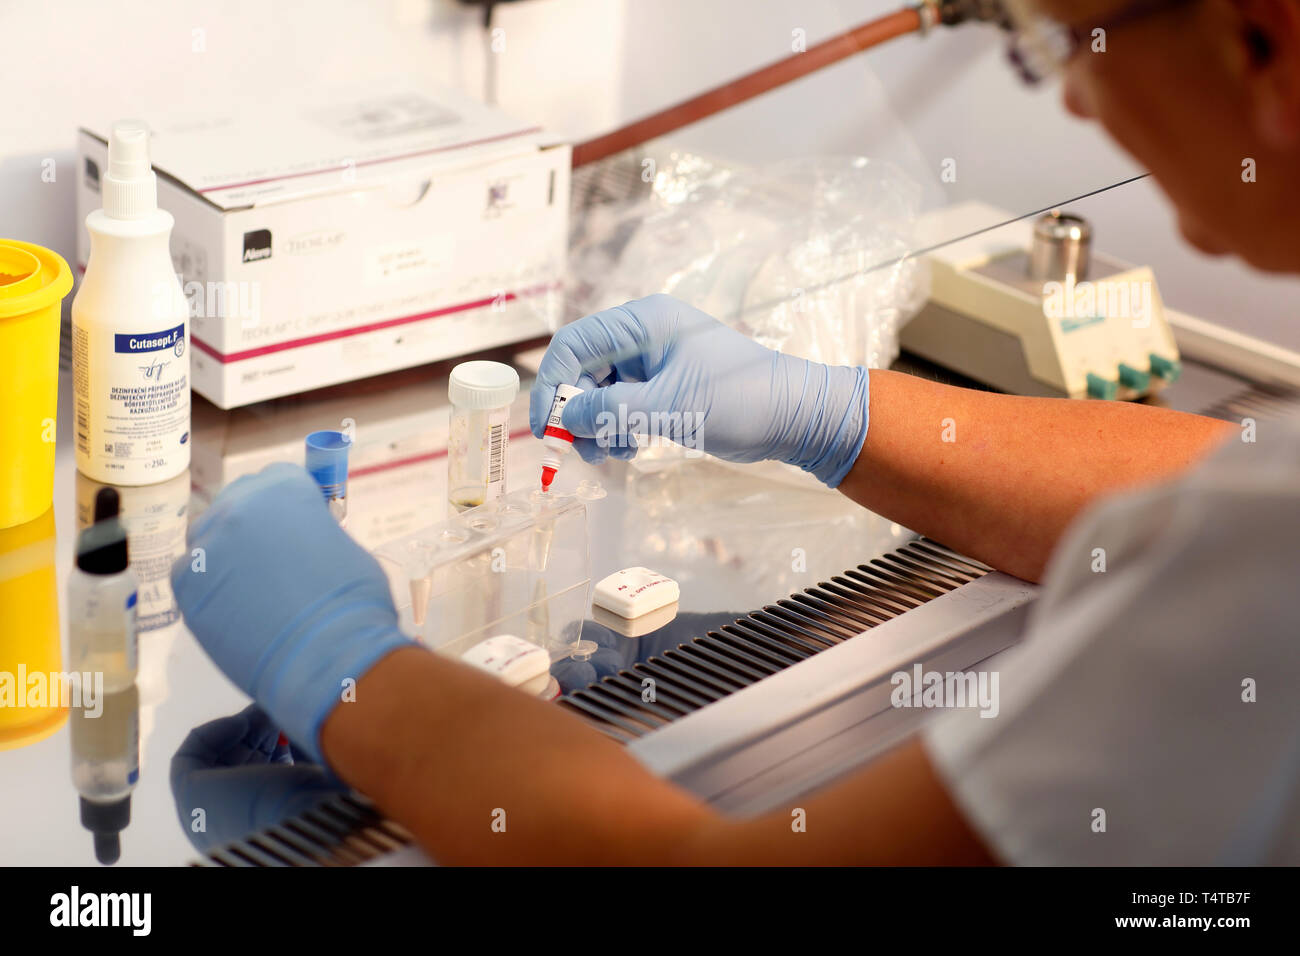 Detalle del cuadro Flowbox laminar (examen), la infección en el hospital, laboratorio acreditado, República Checa Foto de stock